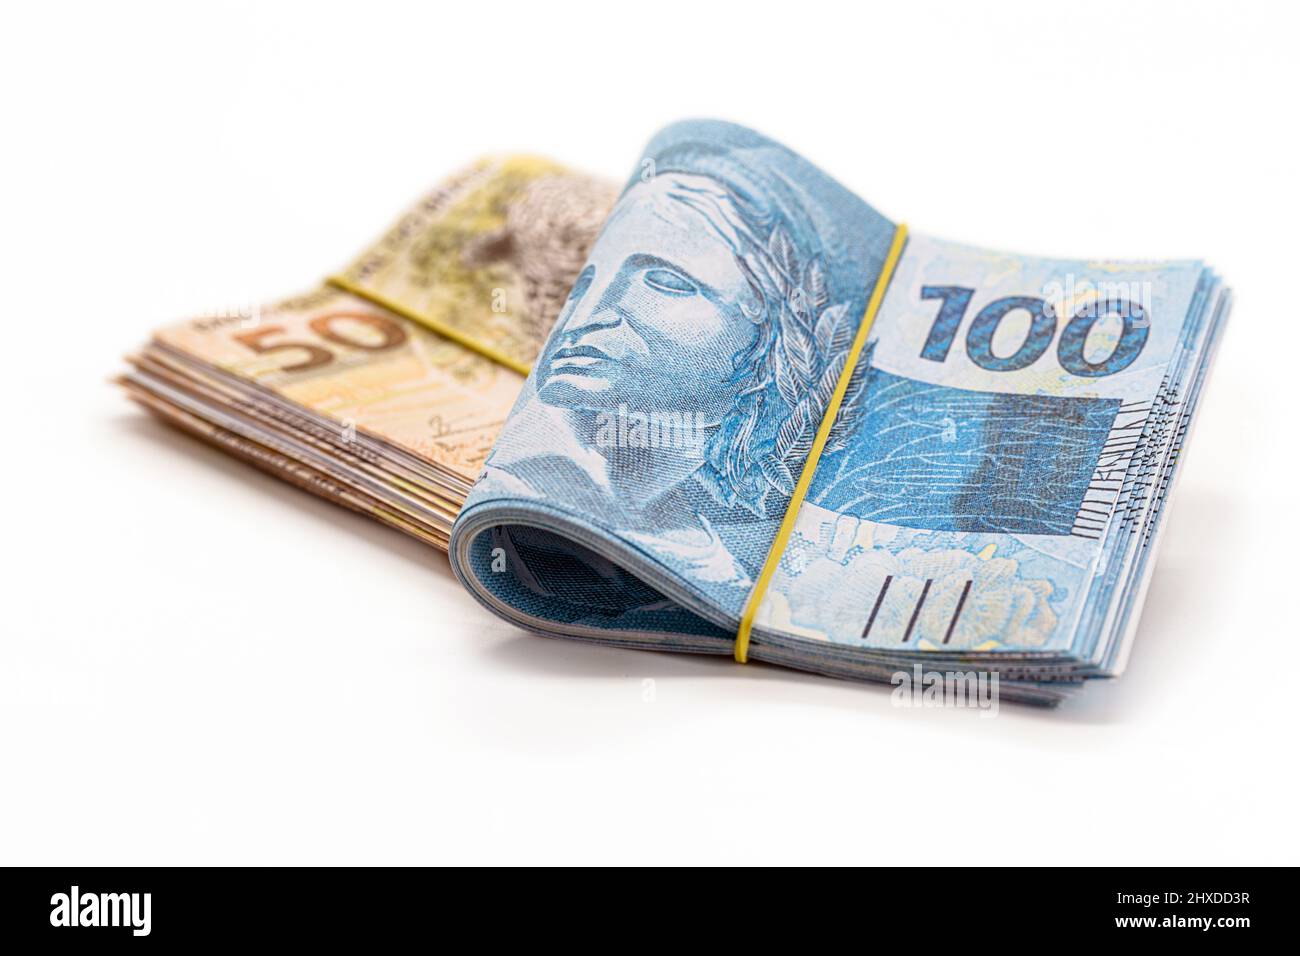 molte banconote da 100 e 50 reais, denaro brasiliano, migliaia di reais, pagamento, stipendio, su sfondo bianco isolato Foto Stock